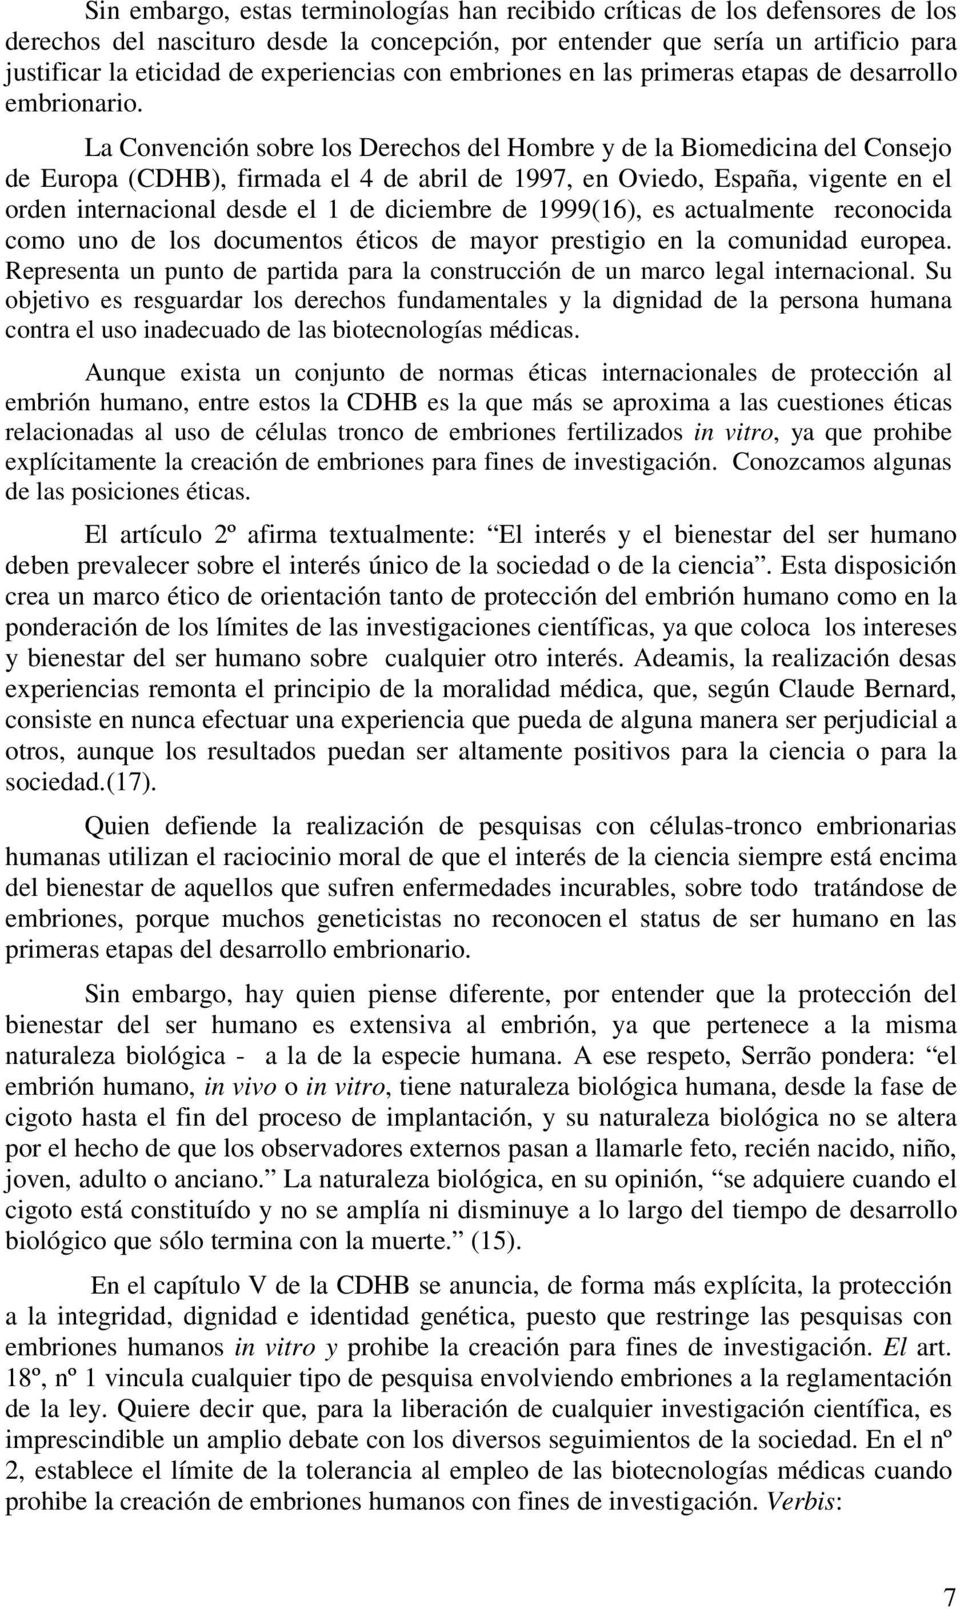 La Convención sobre los Derechos del Hombre y de la Biomedicina del Consejo de Europa (CDHB), firmada el 4 de abril de 1997, en Oviedo, España, vigente en el orden internacional desde el 1 de